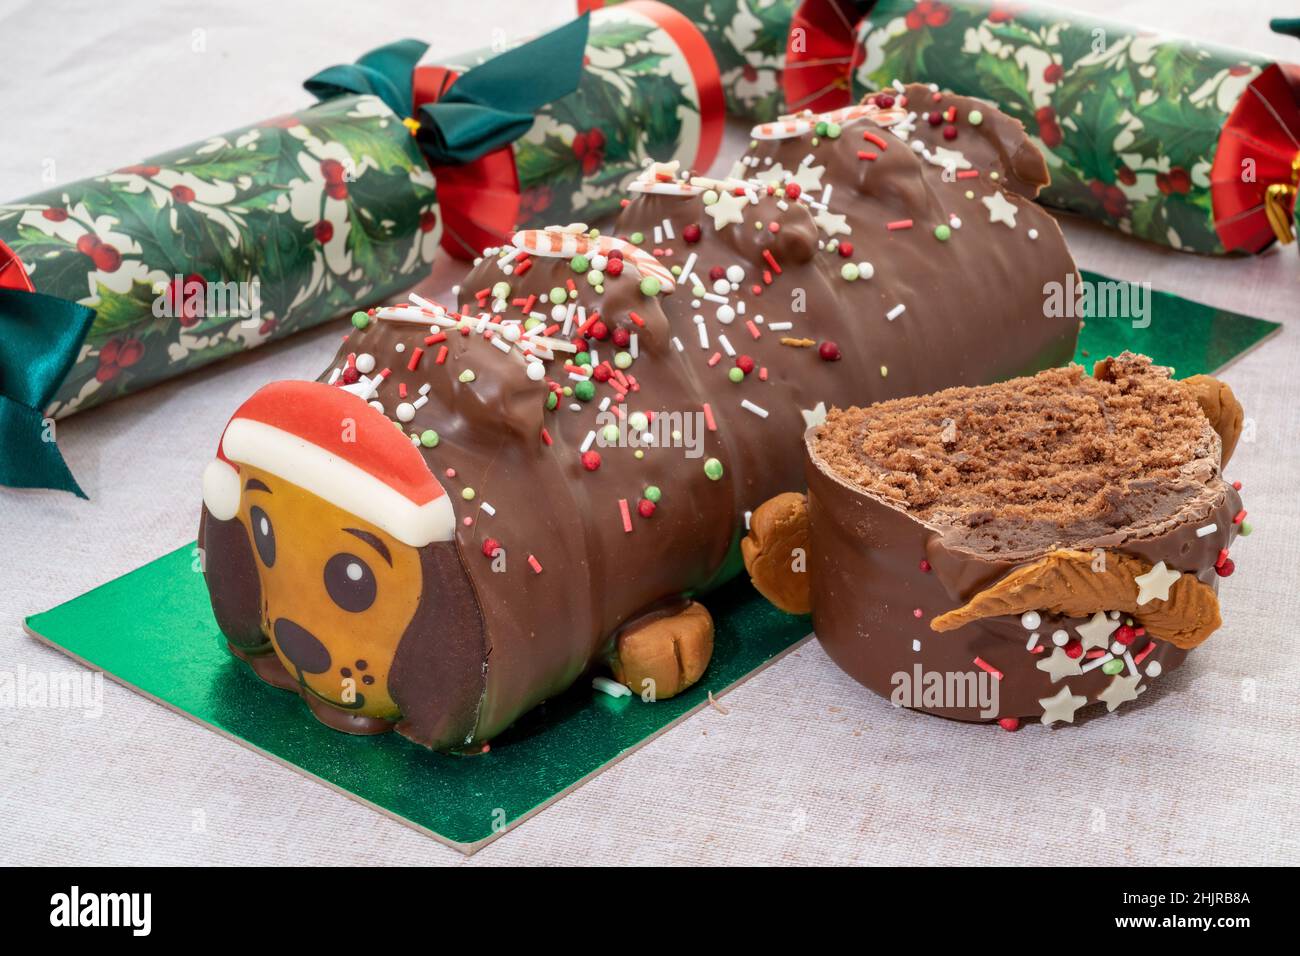 Une bûche de Noël en forme de chien en forme de yules de chocolat avec des craquelins de Noël Banque D'Images